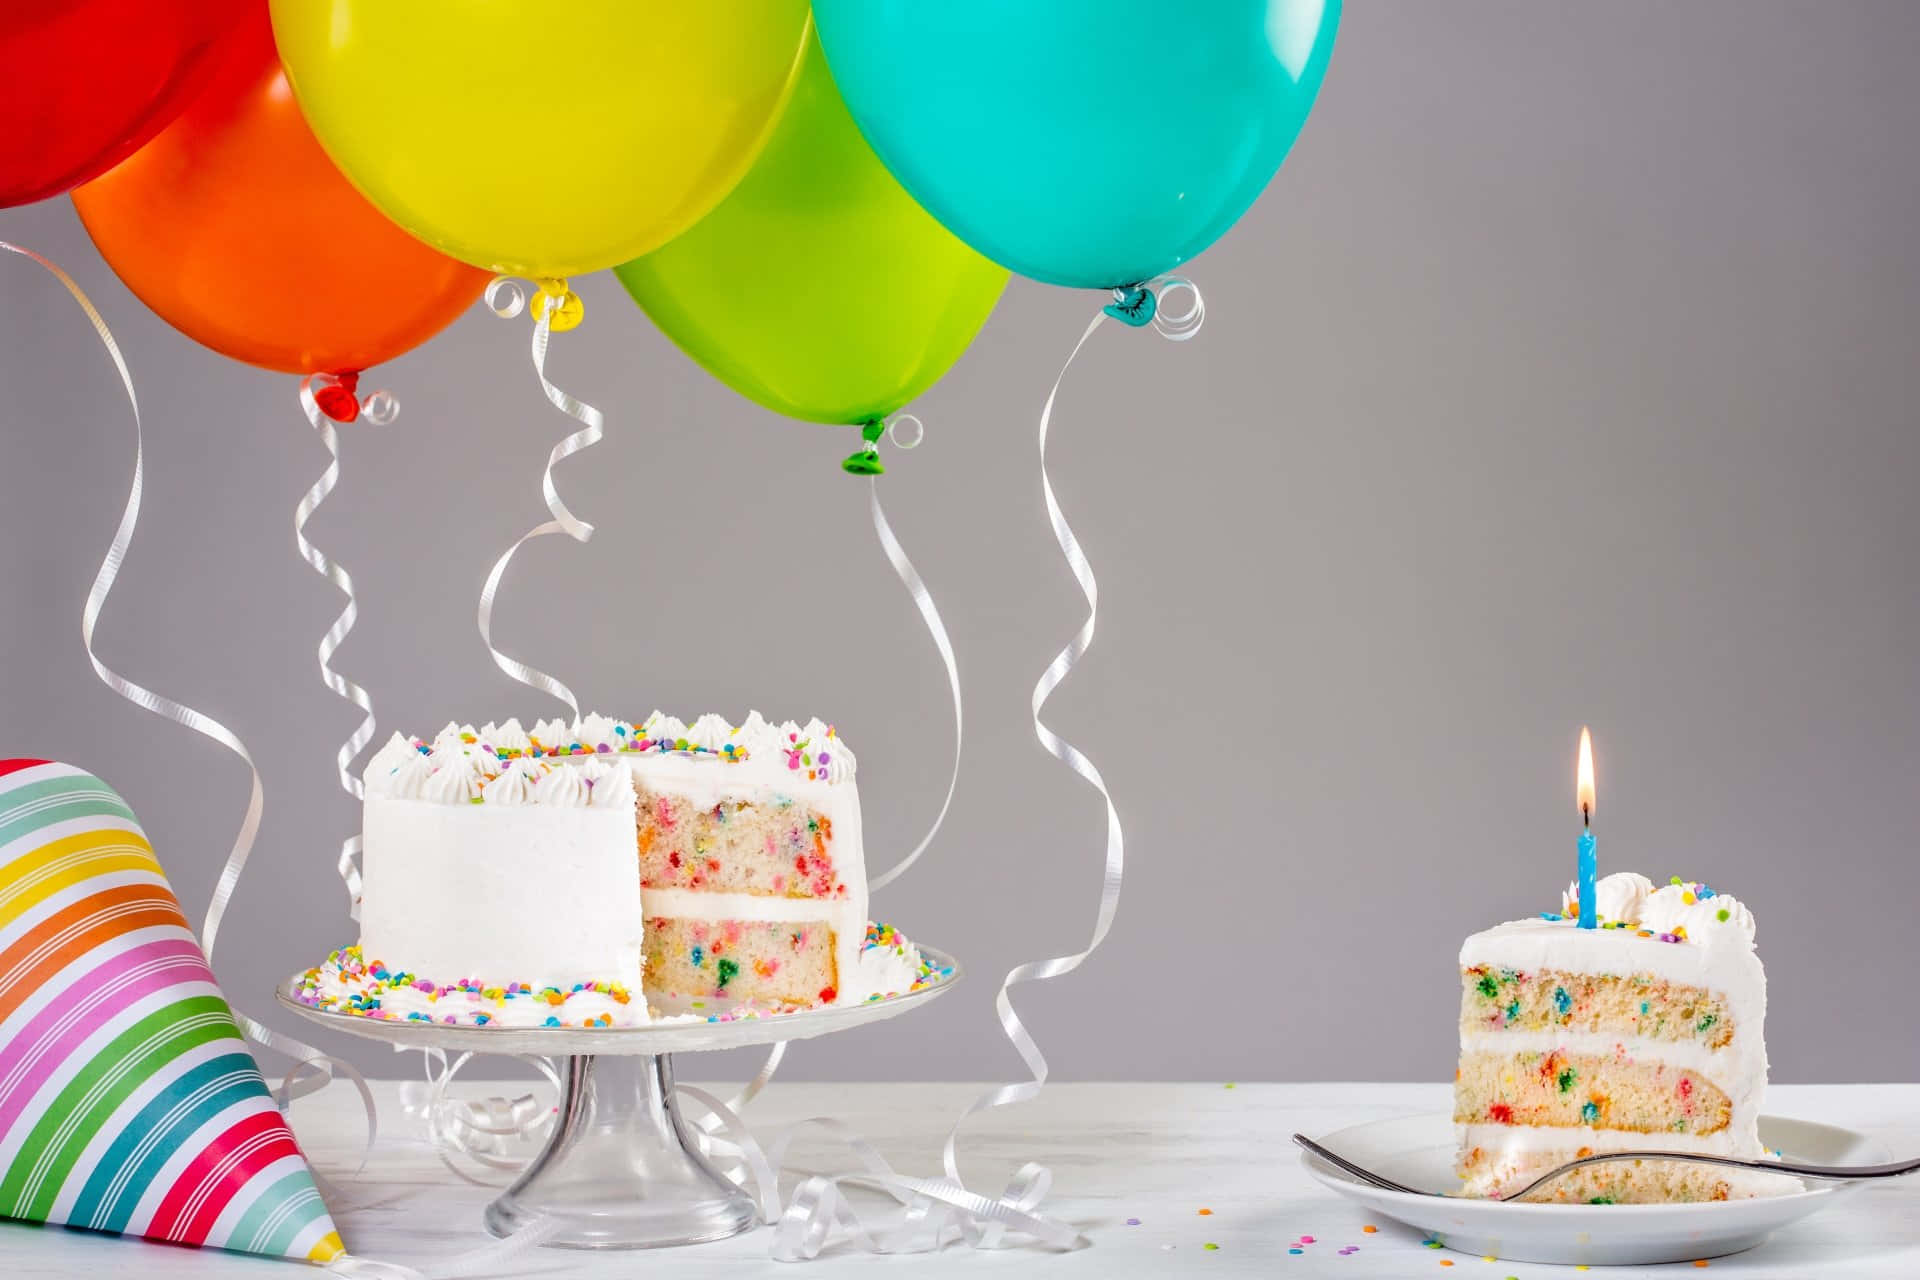 Palloncinidi Compleanno Con Immagine Di Una Torta Di Compleanno